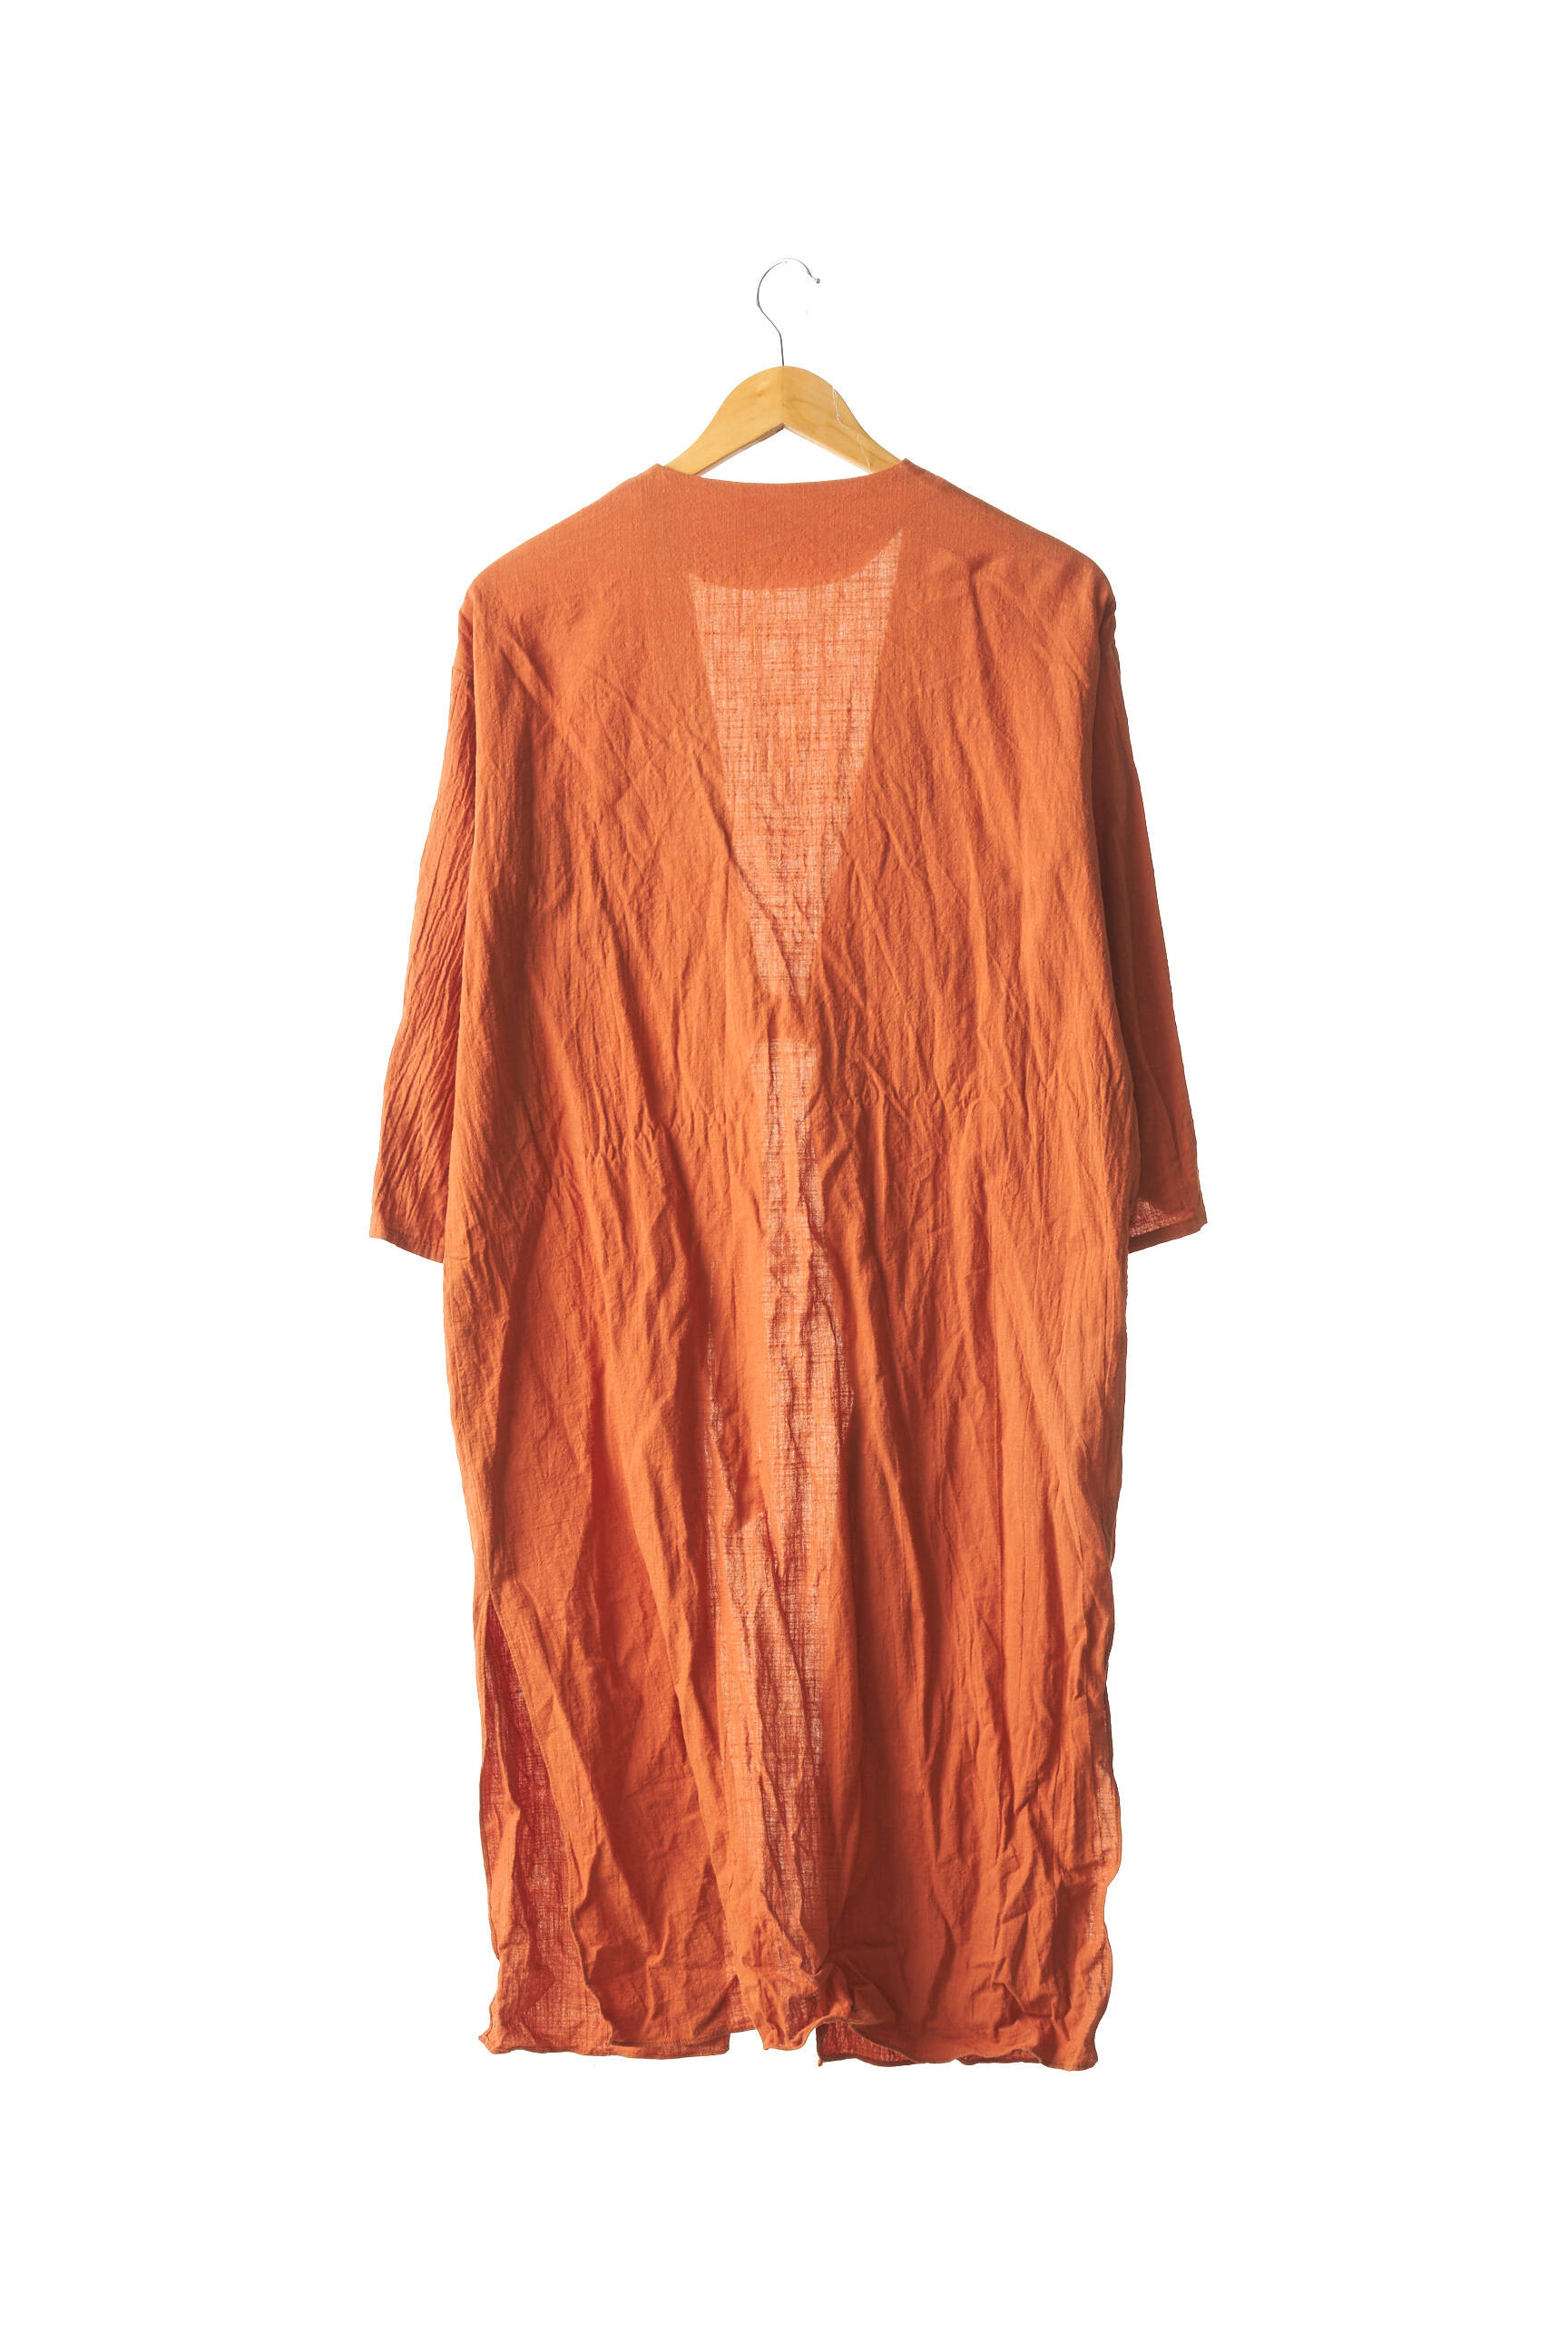 manteau femme orange zara